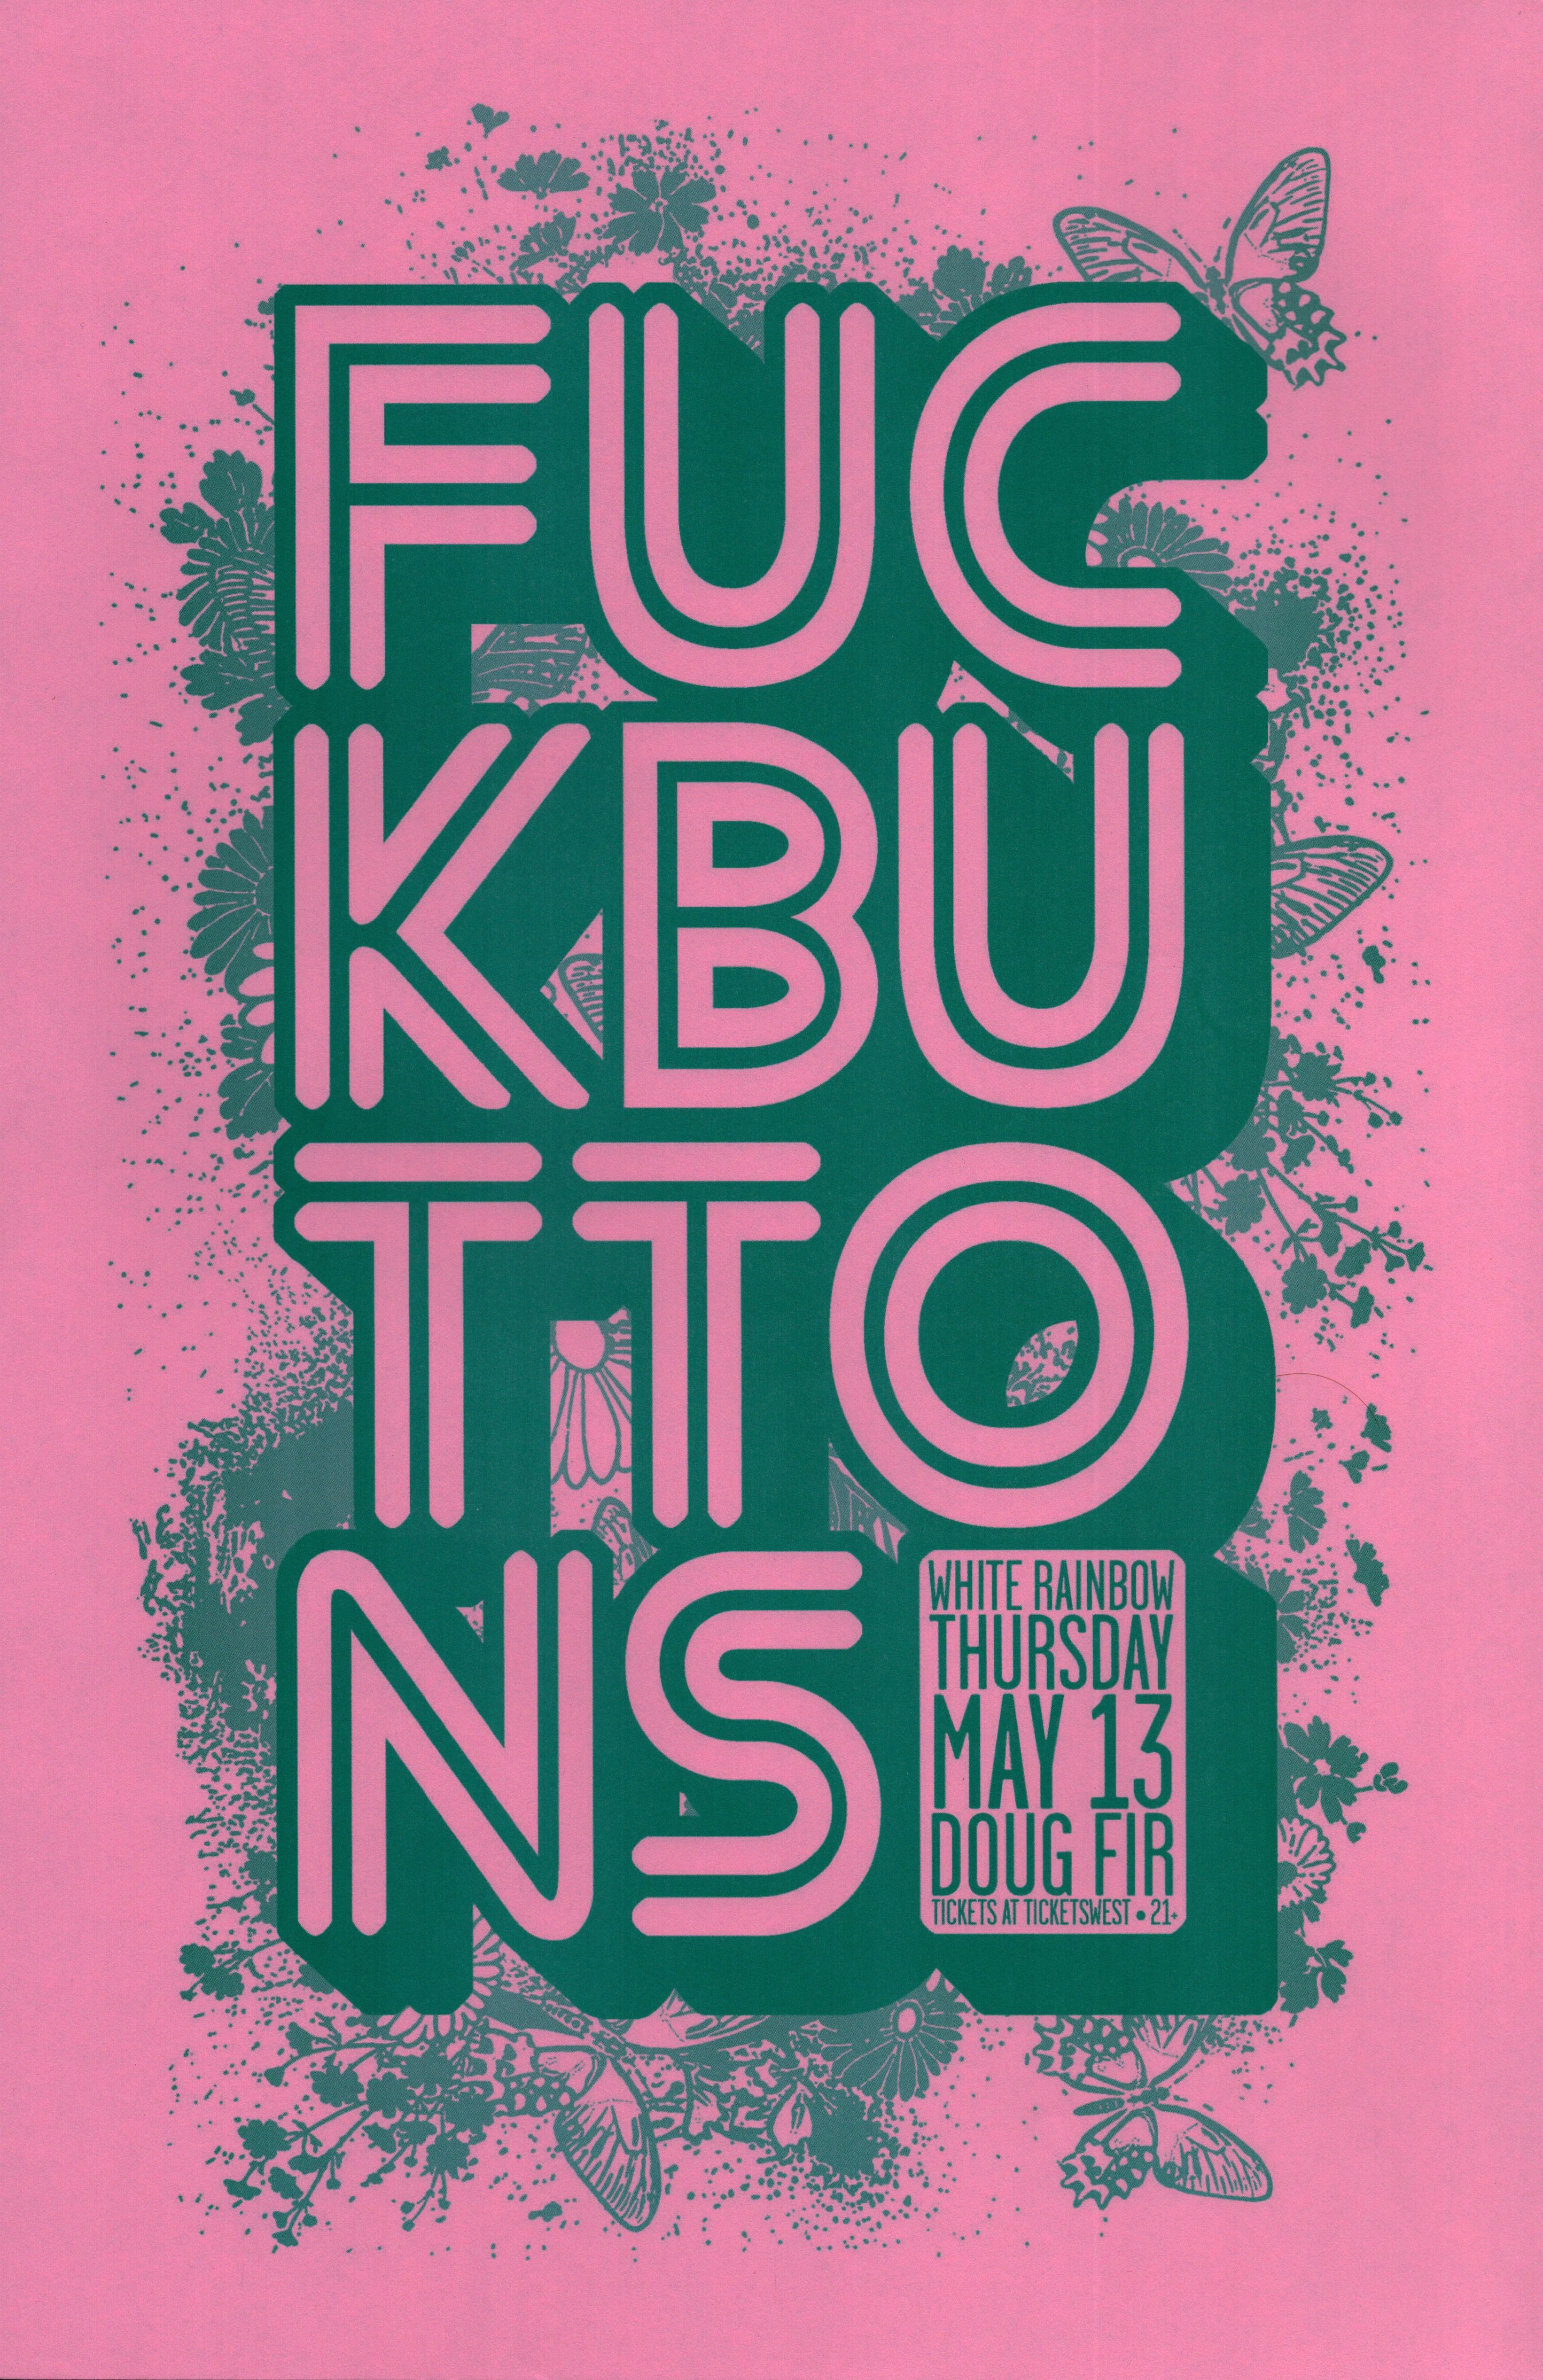 MXP-147.9 Fuckbuttons Doug Fir 2010 Concert Poster